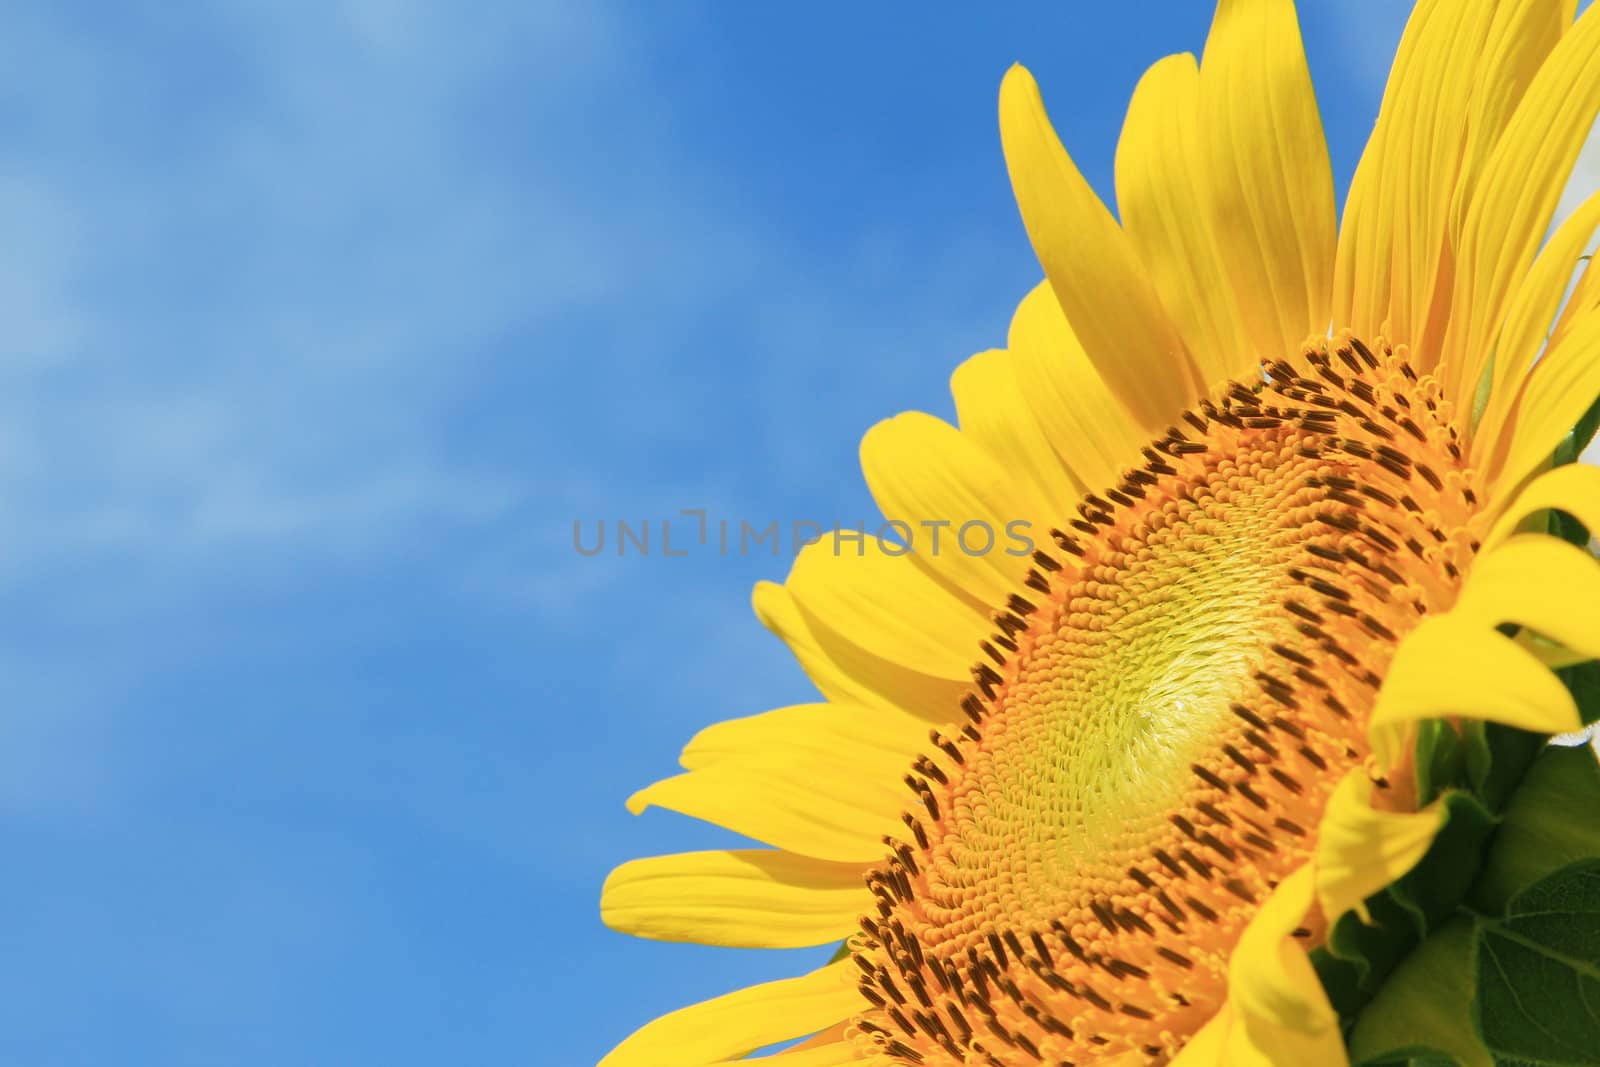 Closeup of Sunflower